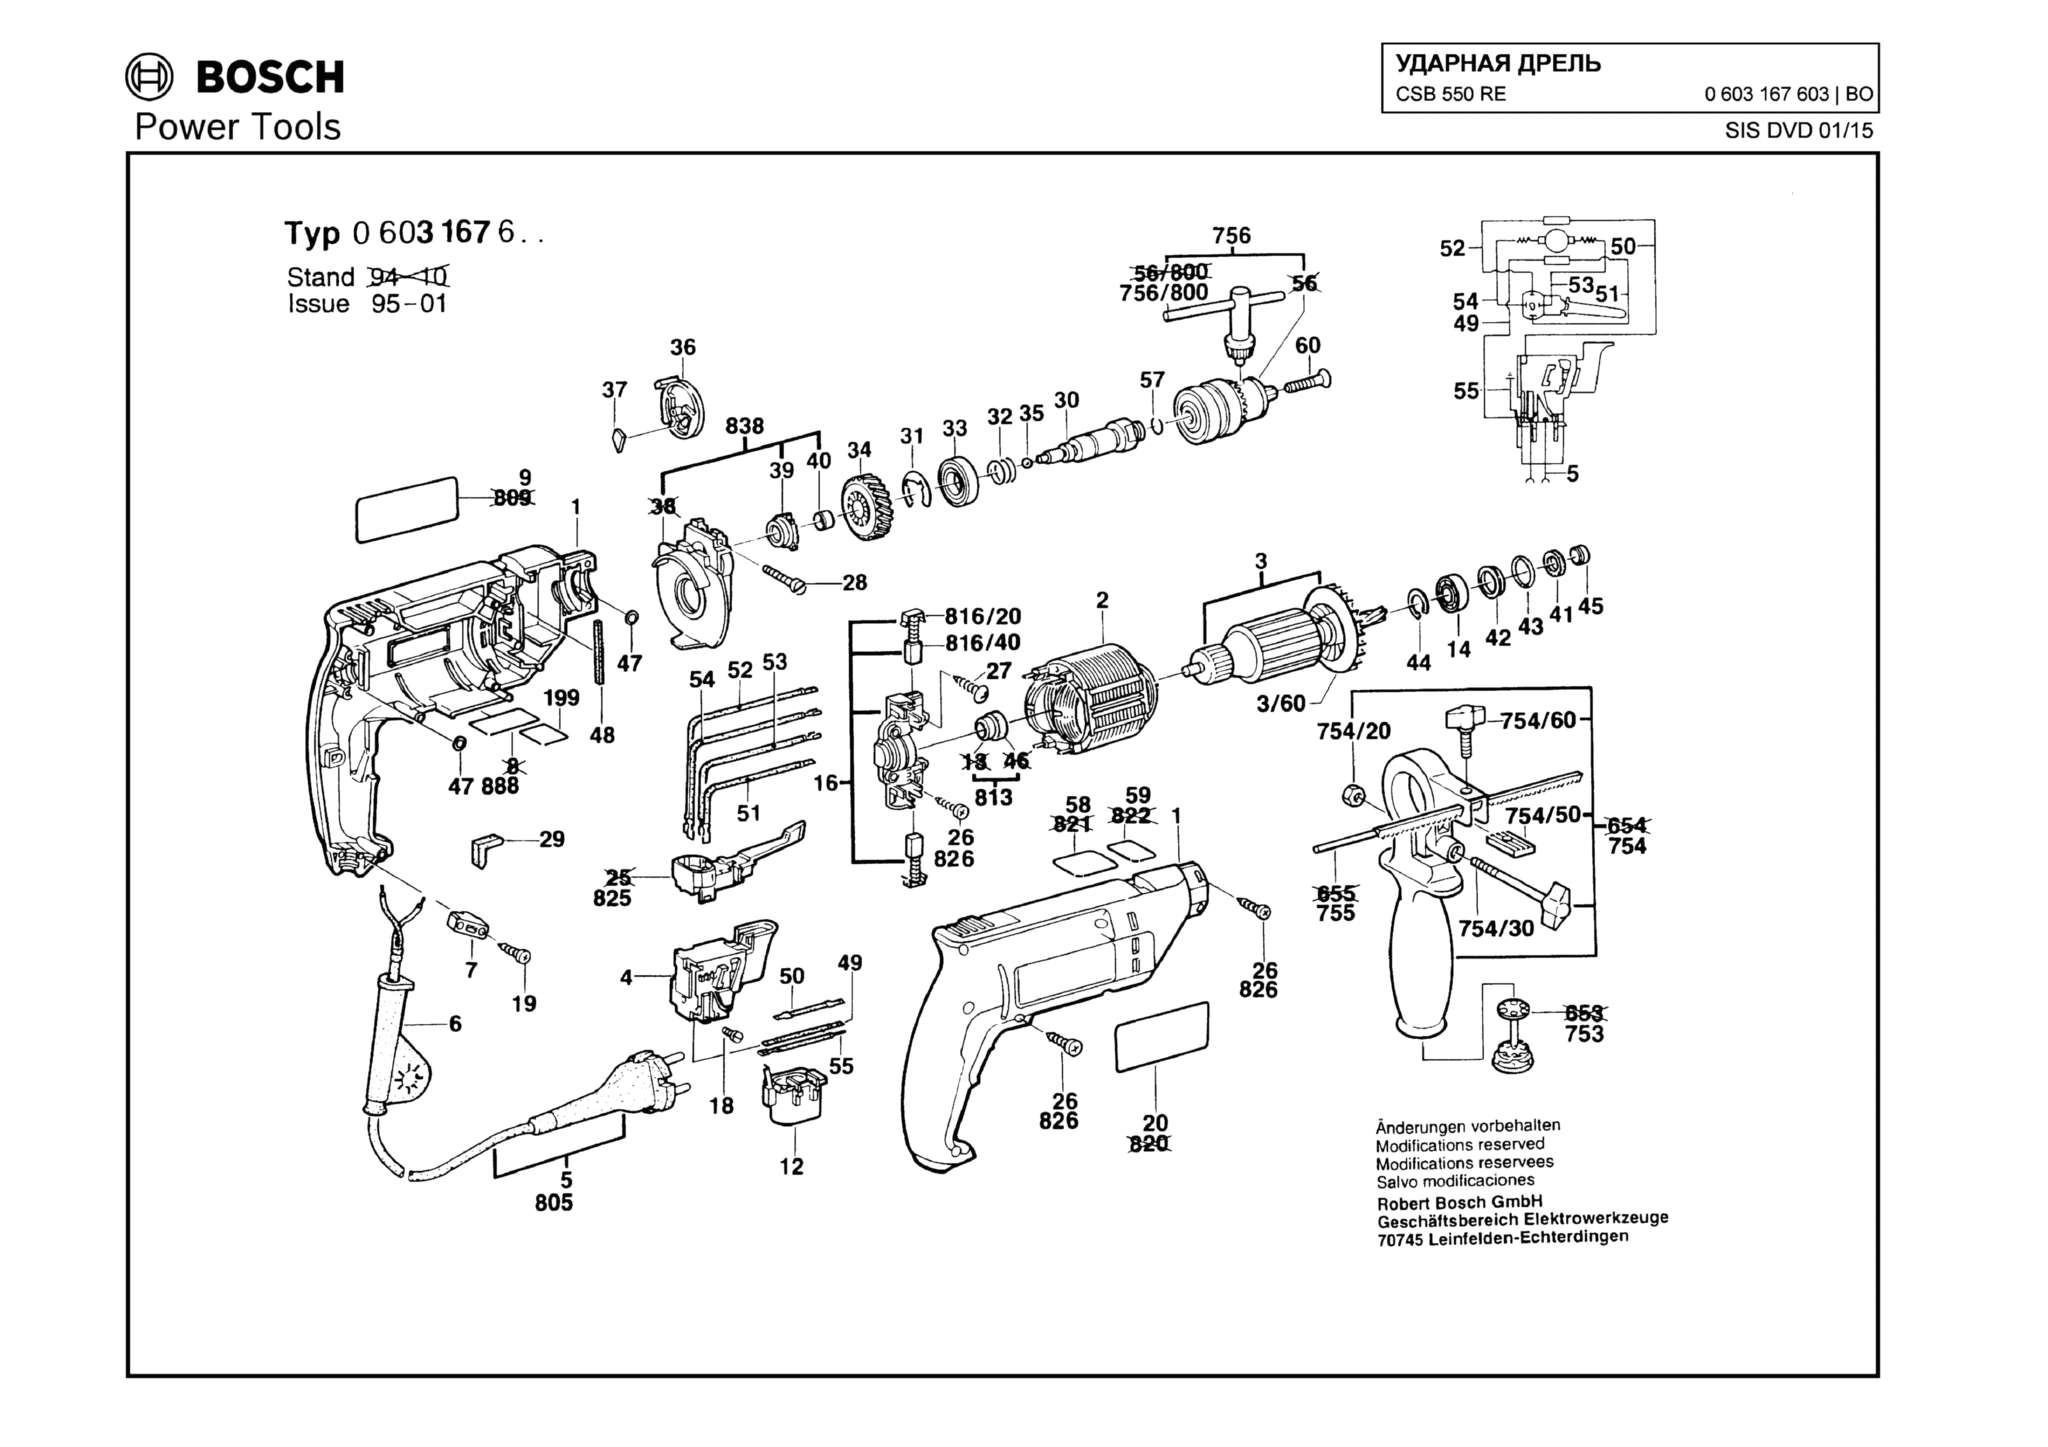 Запчасти, схема и деталировка Bosch CSB 550 RE (ТИП 0603167603)